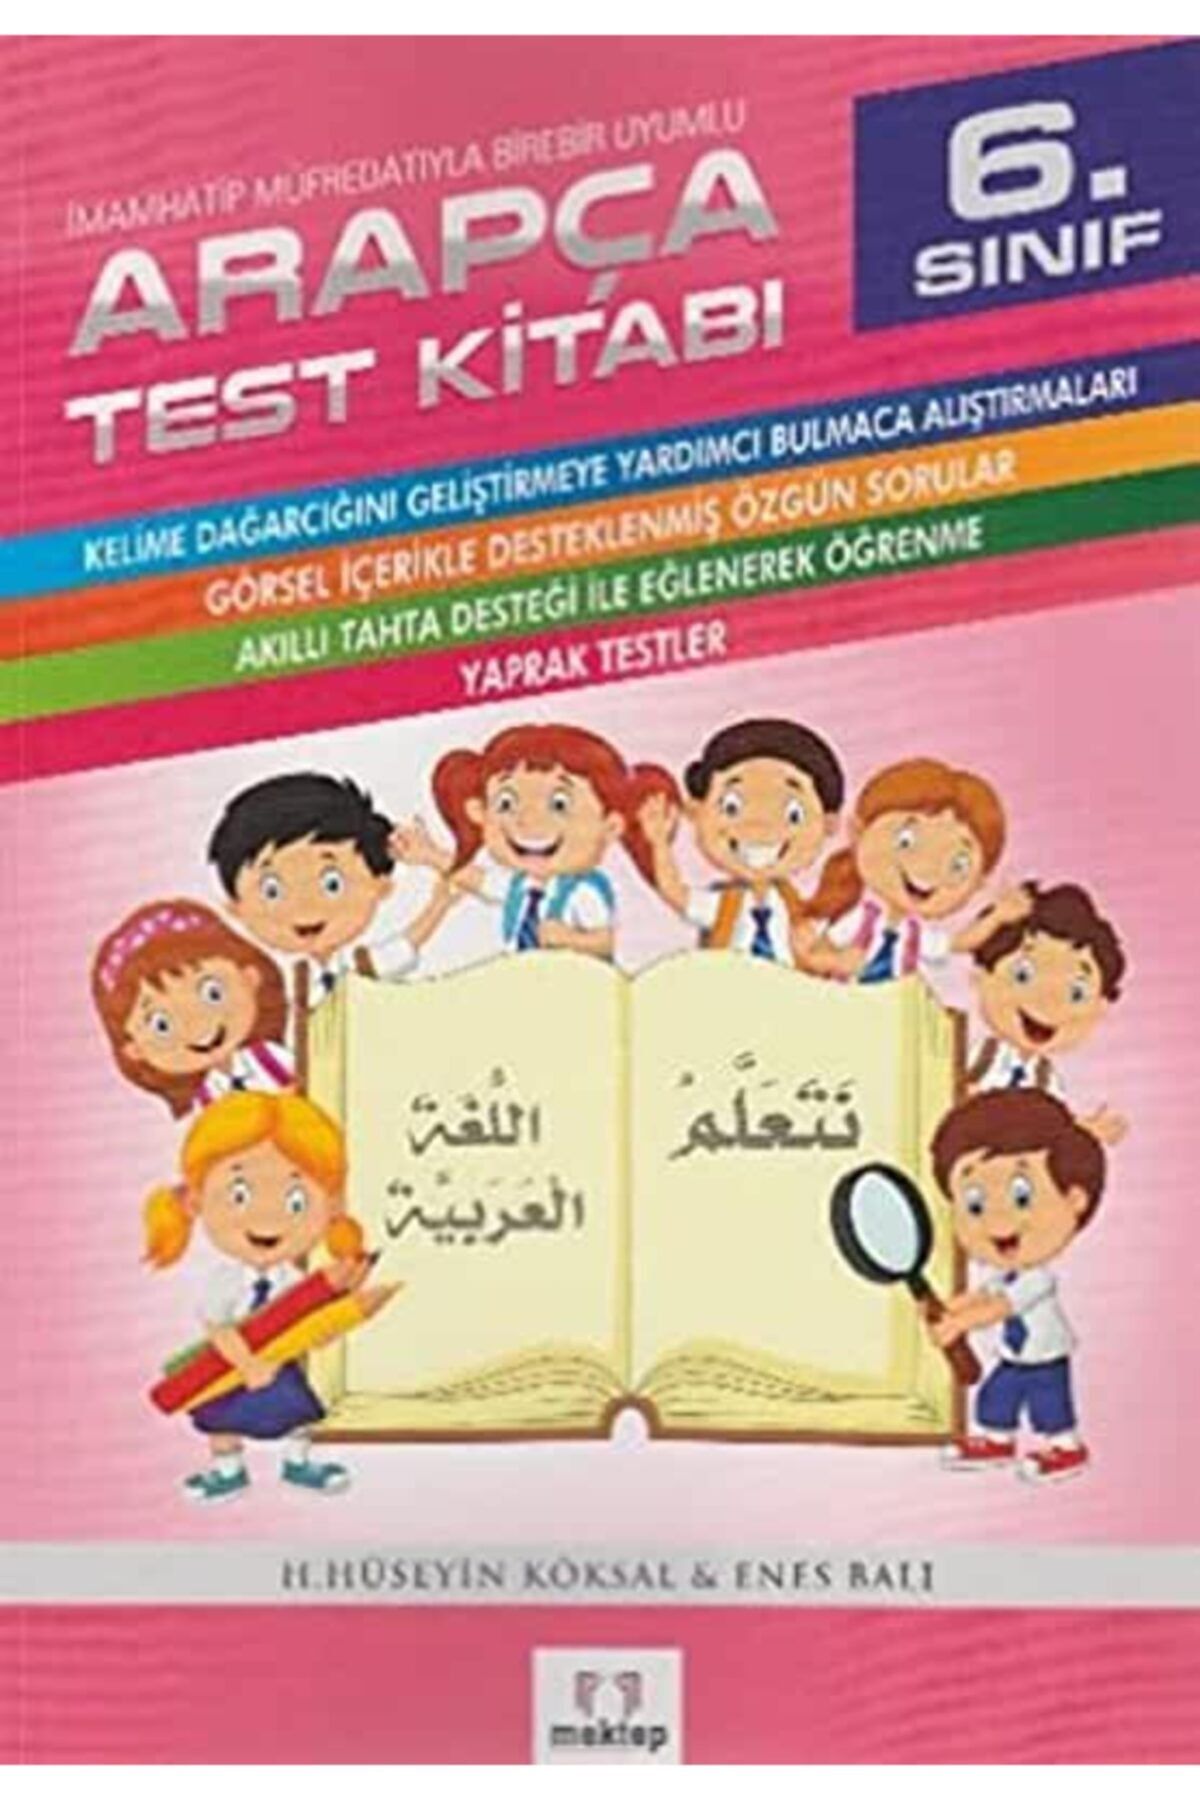 Mektebe Yayınları 6. Sınıf Arapça Test Kitabı Imam Hatip Lisesi Müfredatıyla Birebir Uyumlu